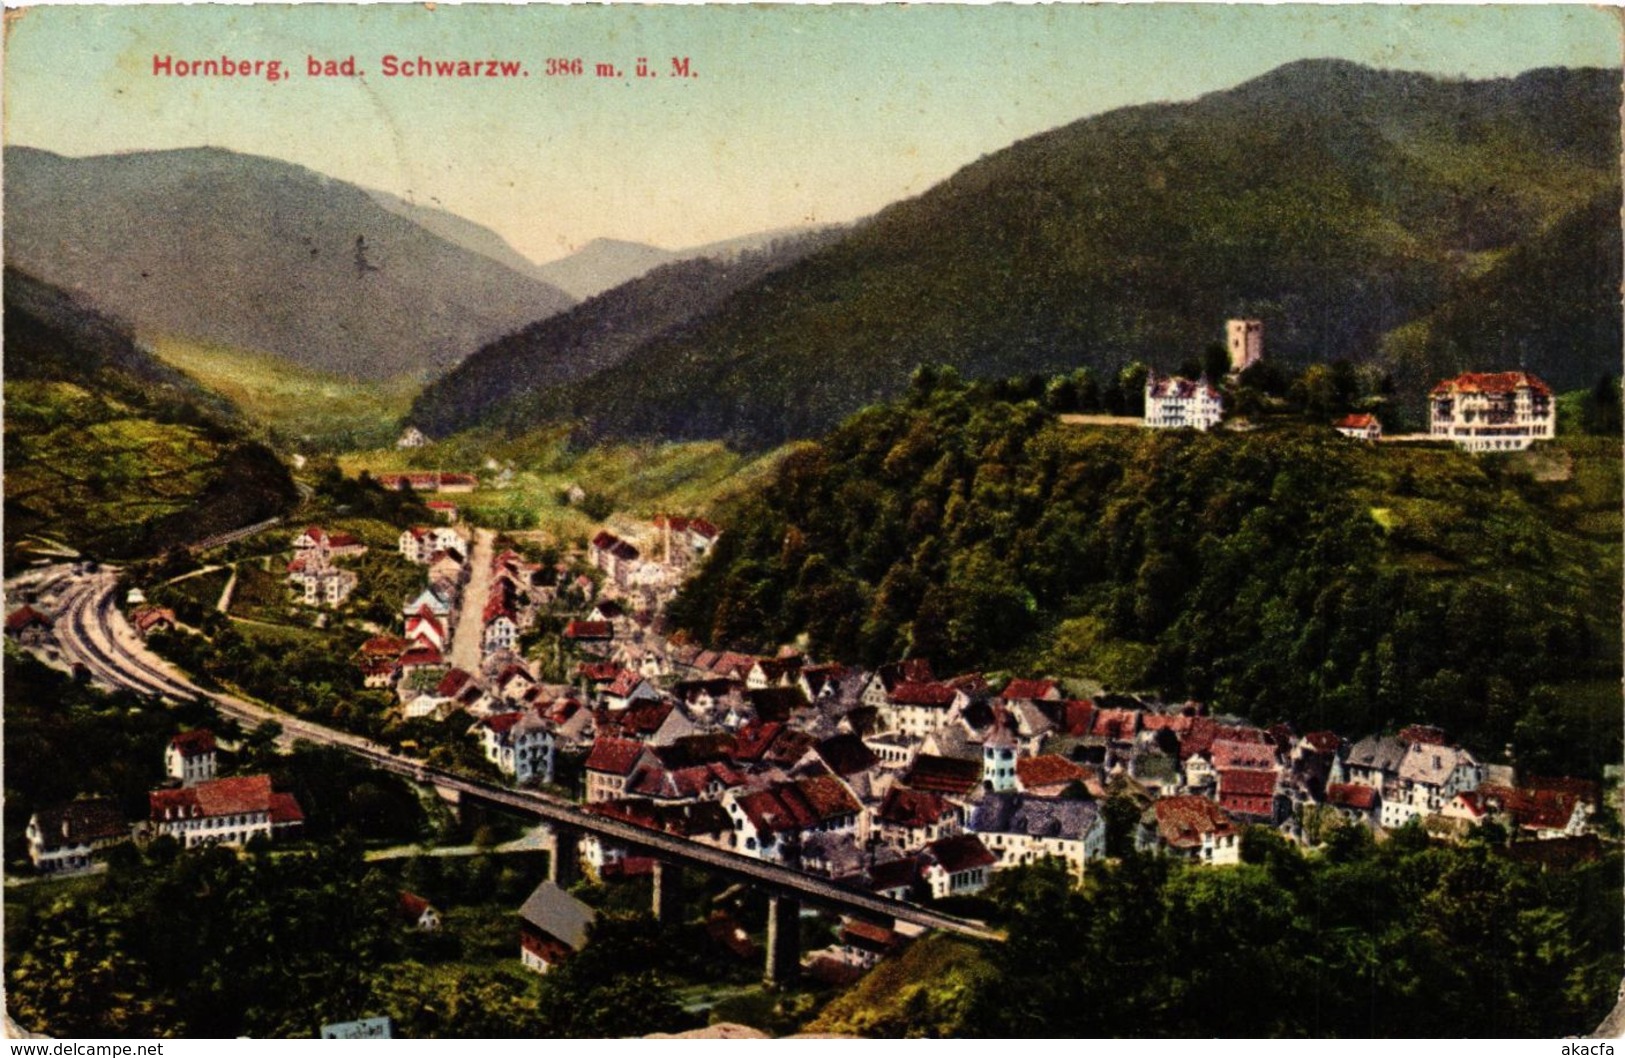 CPA AK Hornberg Bad Schwarzwald GERMANY (934567) - Hornberg